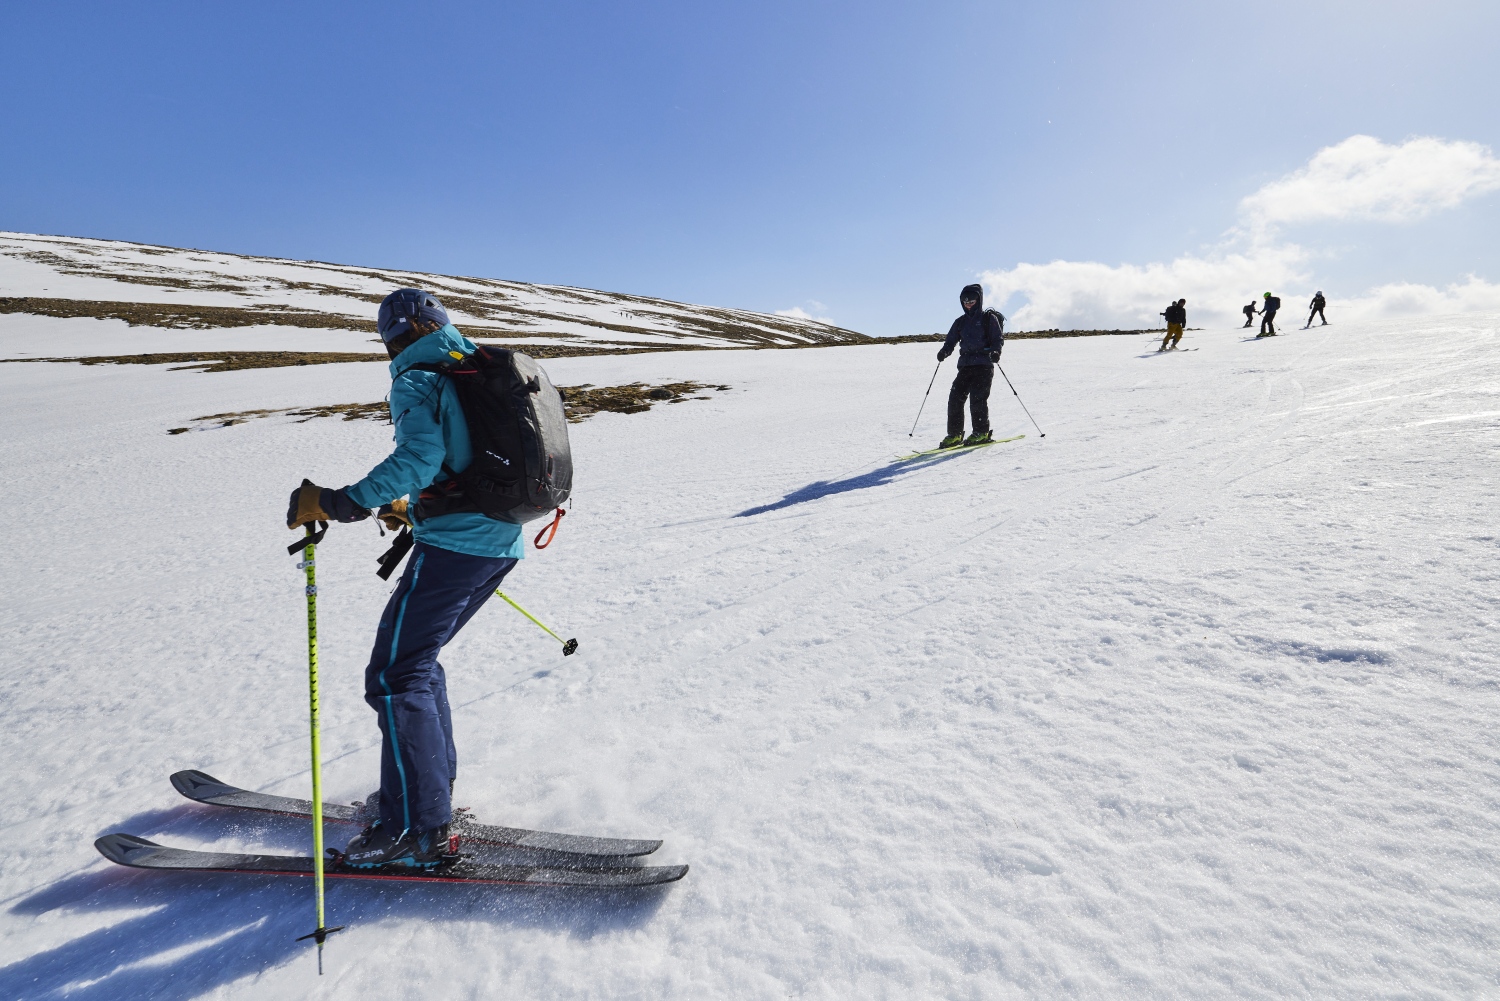 Ski touring across a snowy plain, Scotland